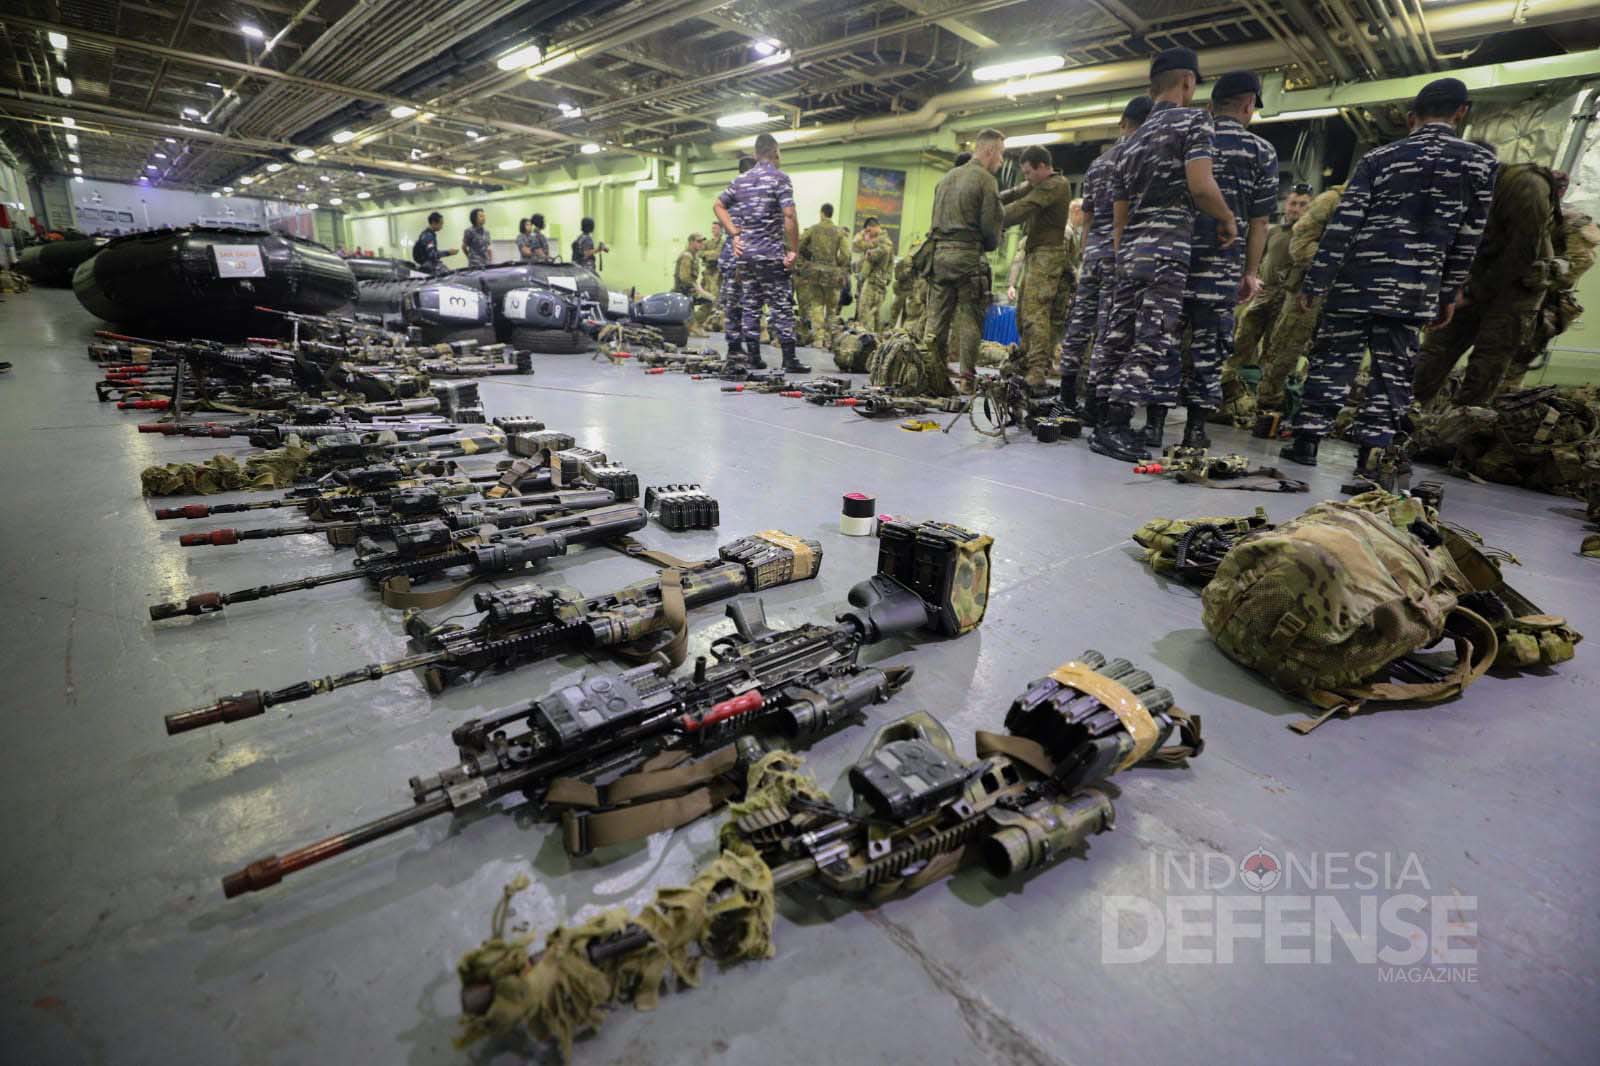 Pasukan Australia Defense Force (ADF) Tiba di KRI Banjarmasin